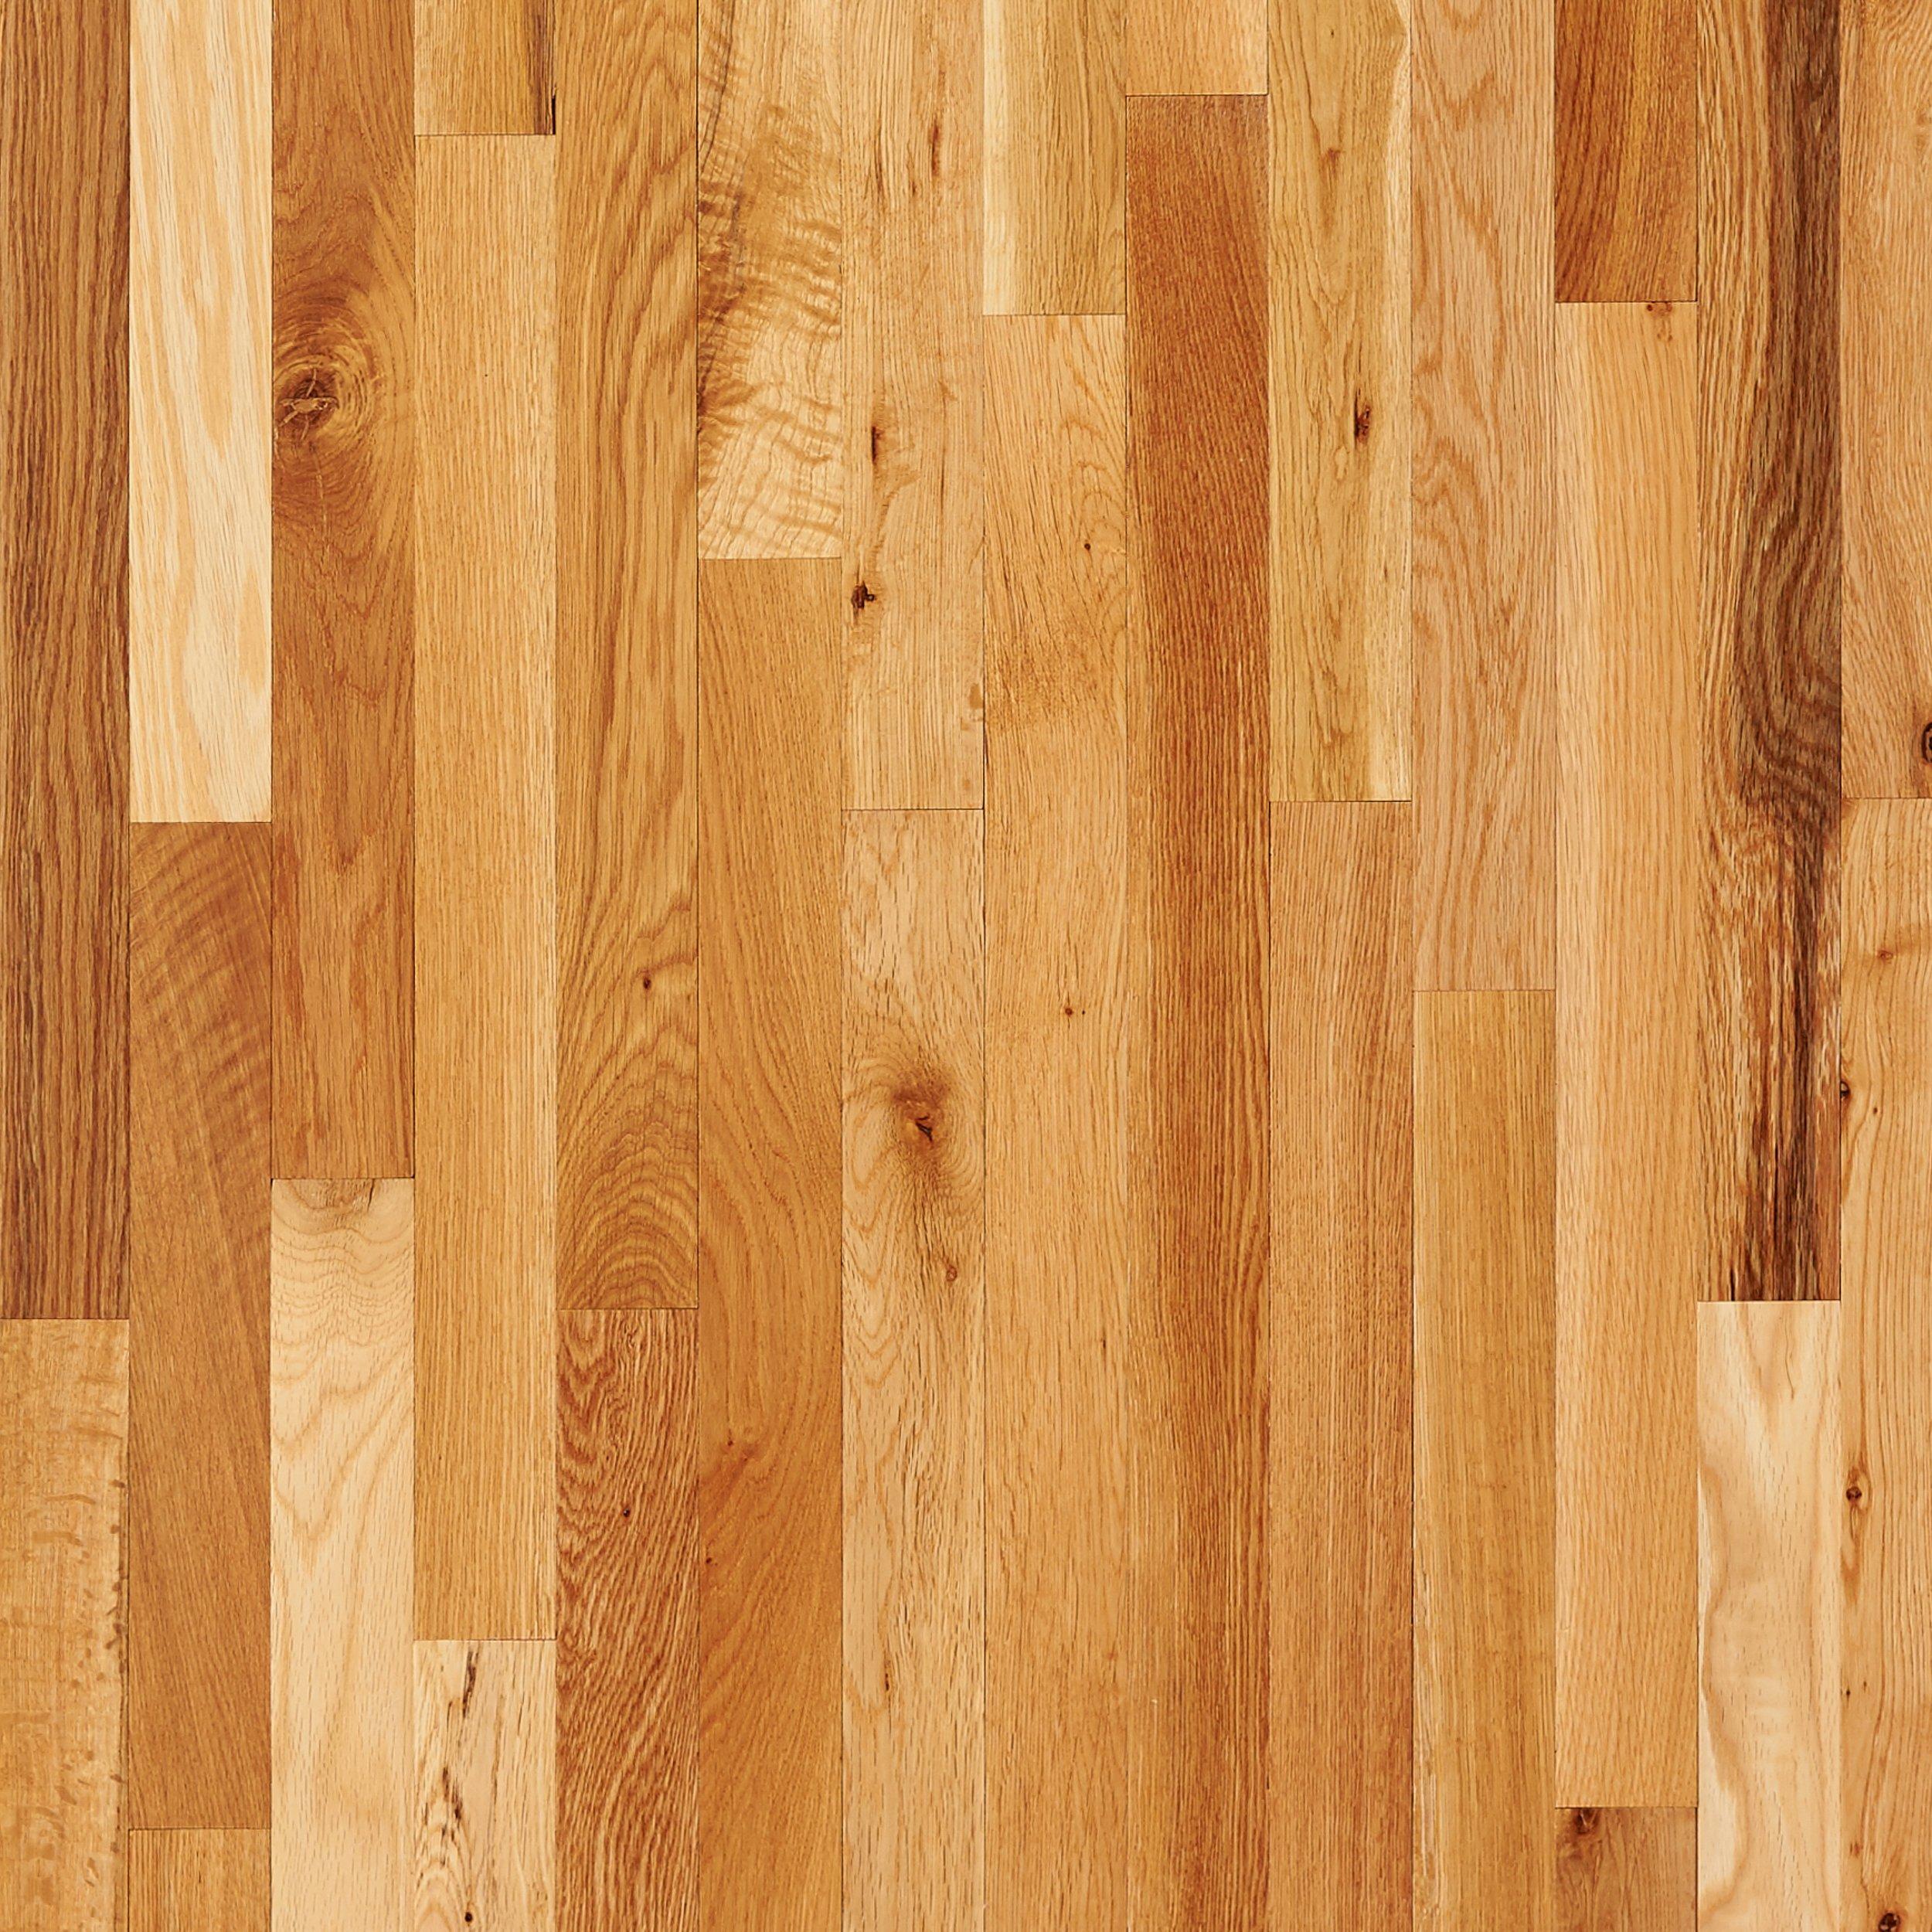 wood flooring natural oak smooth solid hardwood AXLVHXC